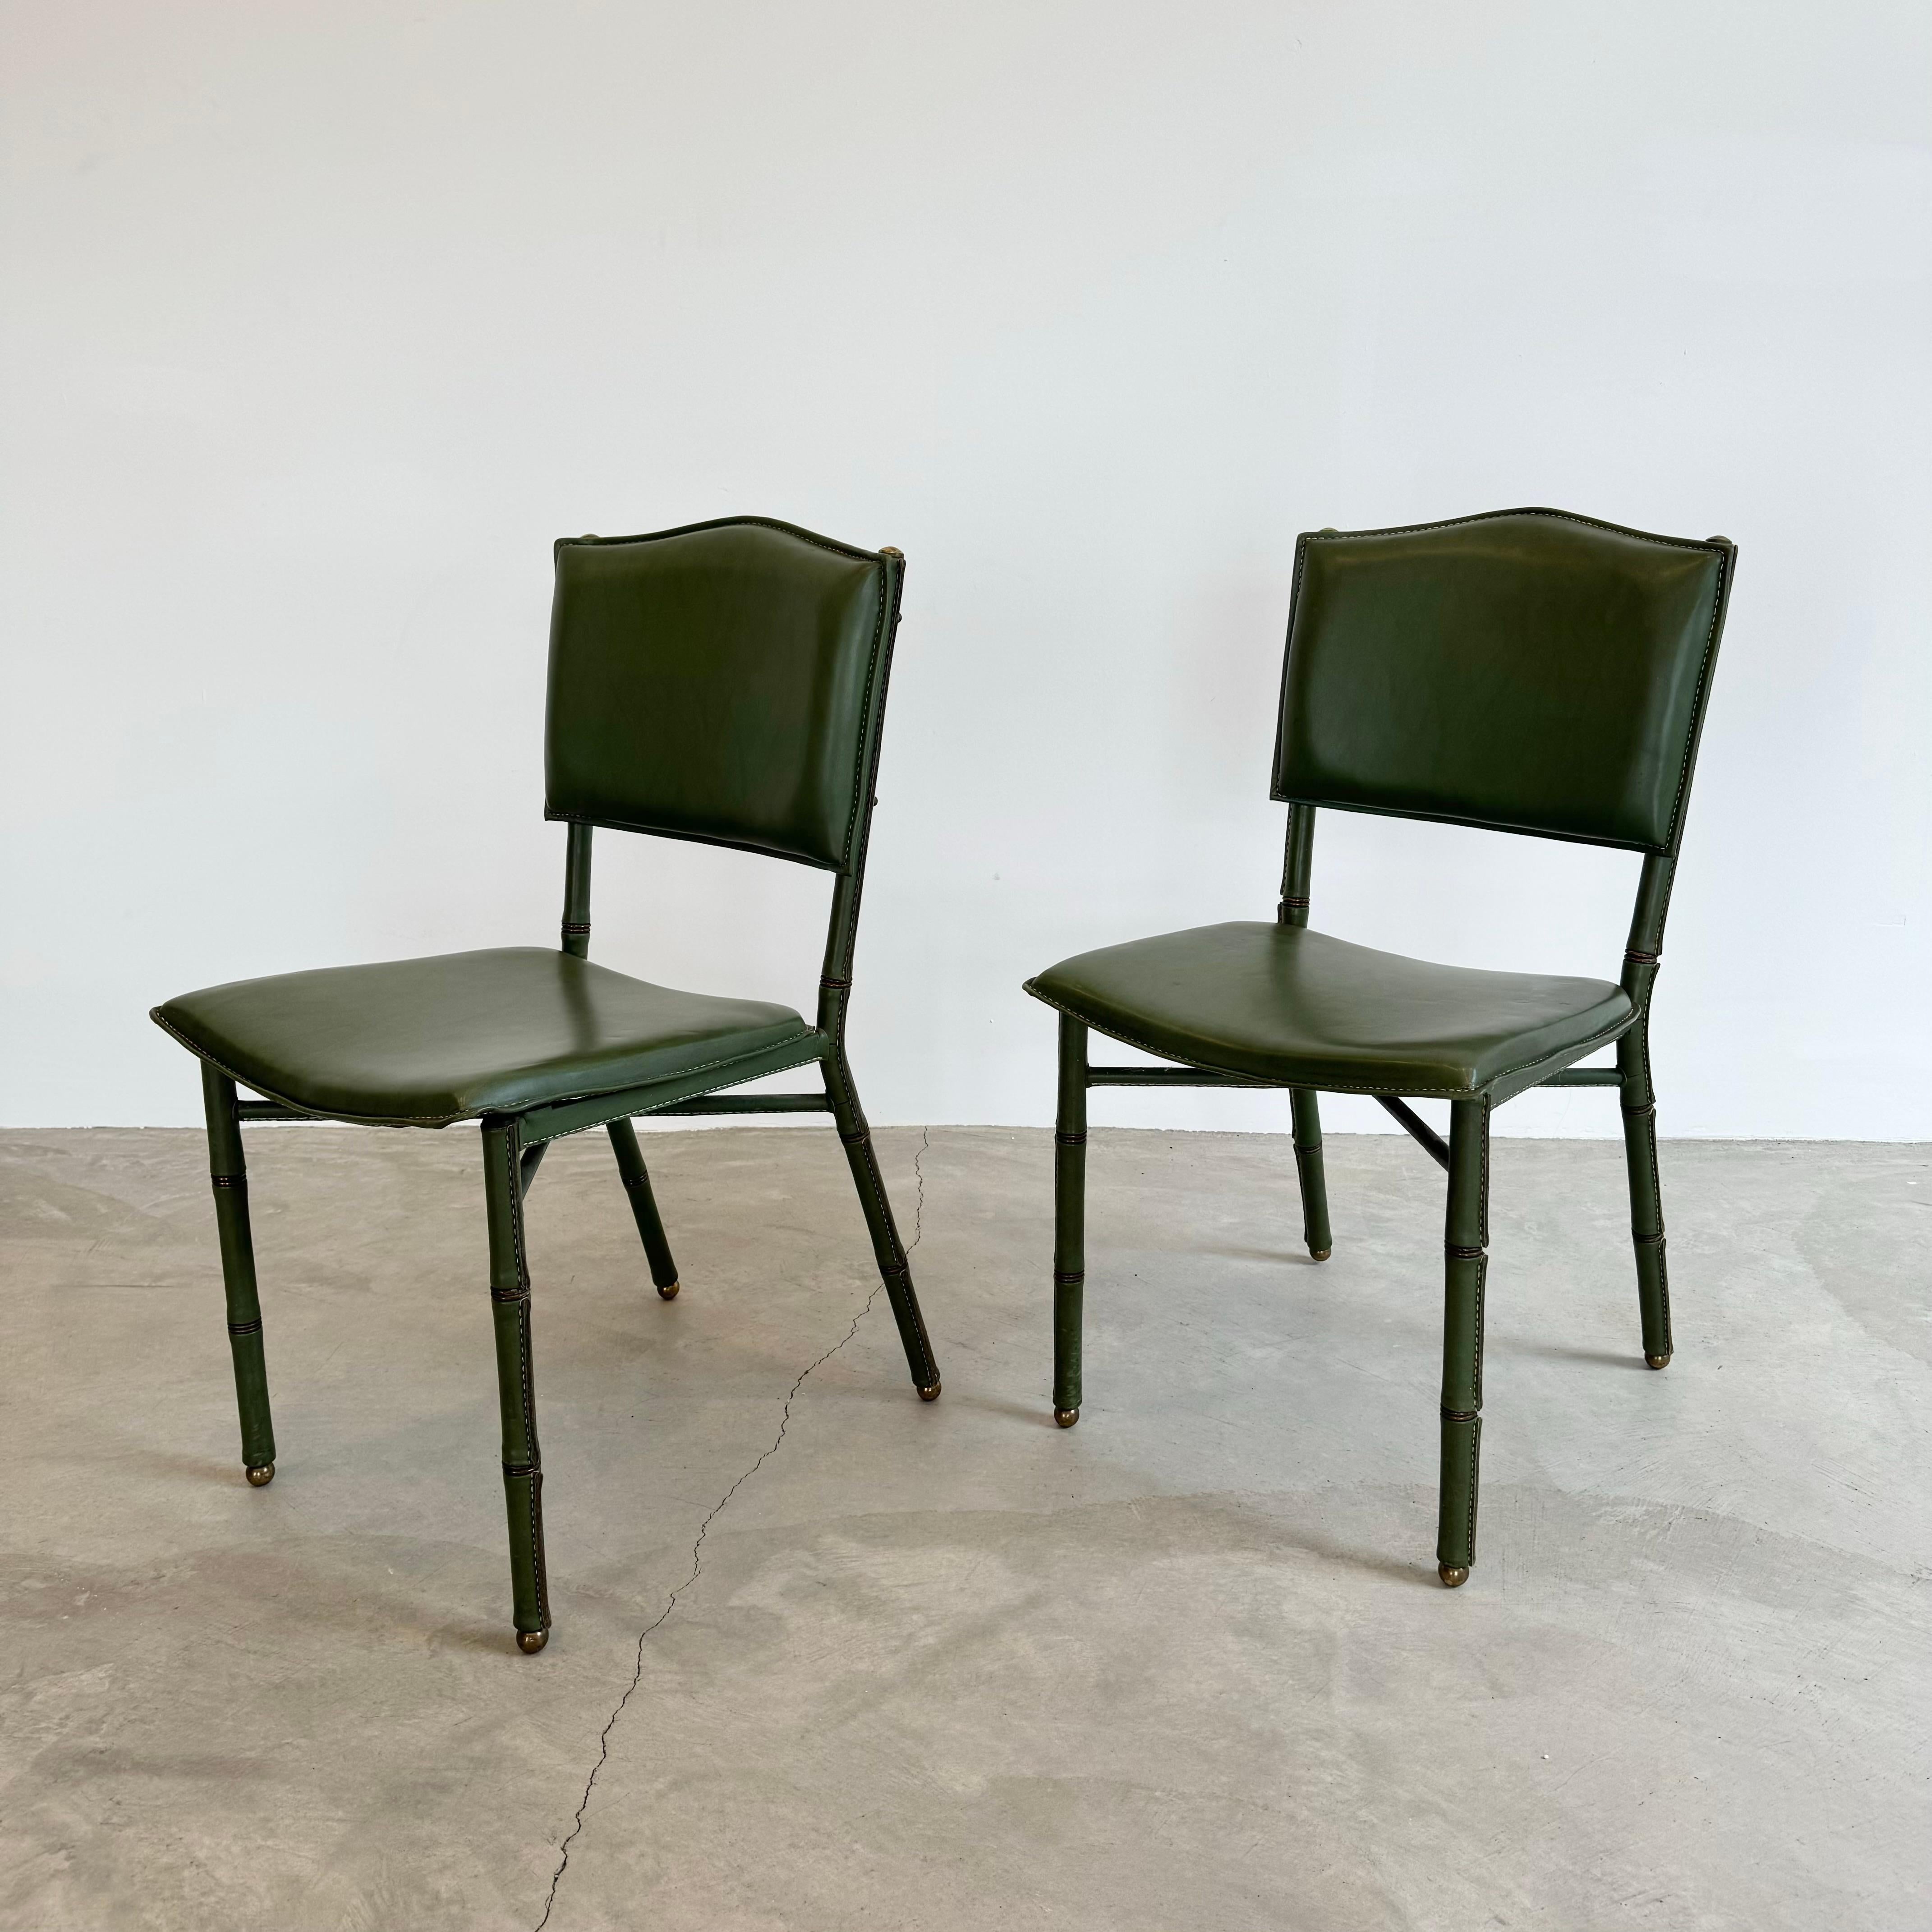 Paire de rares chaises de l'architecte français et designer moderniste Art déco, icône du modernisme luxueux français, Jacques Adnet, vers les années 1950. Chaque chaise est recouverte d'un somptueux cuir vert. La signature du bambou en laiton et en